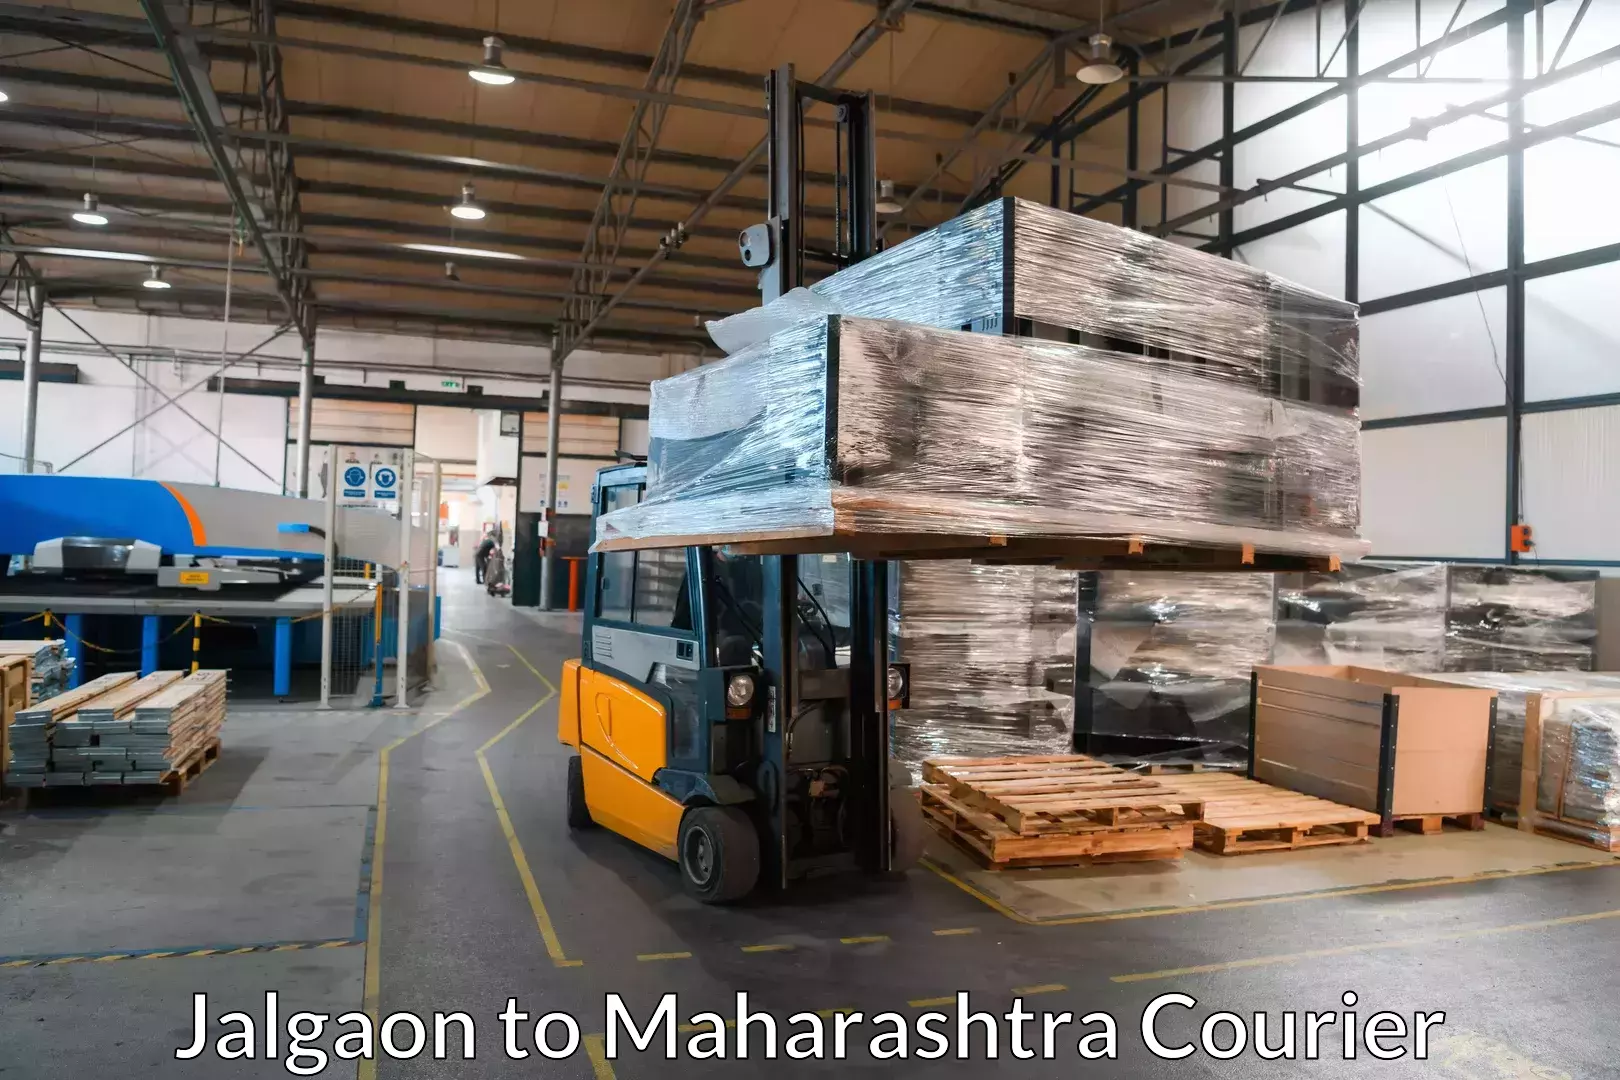 Moving and packing experts Jalgaon to Maharashtra